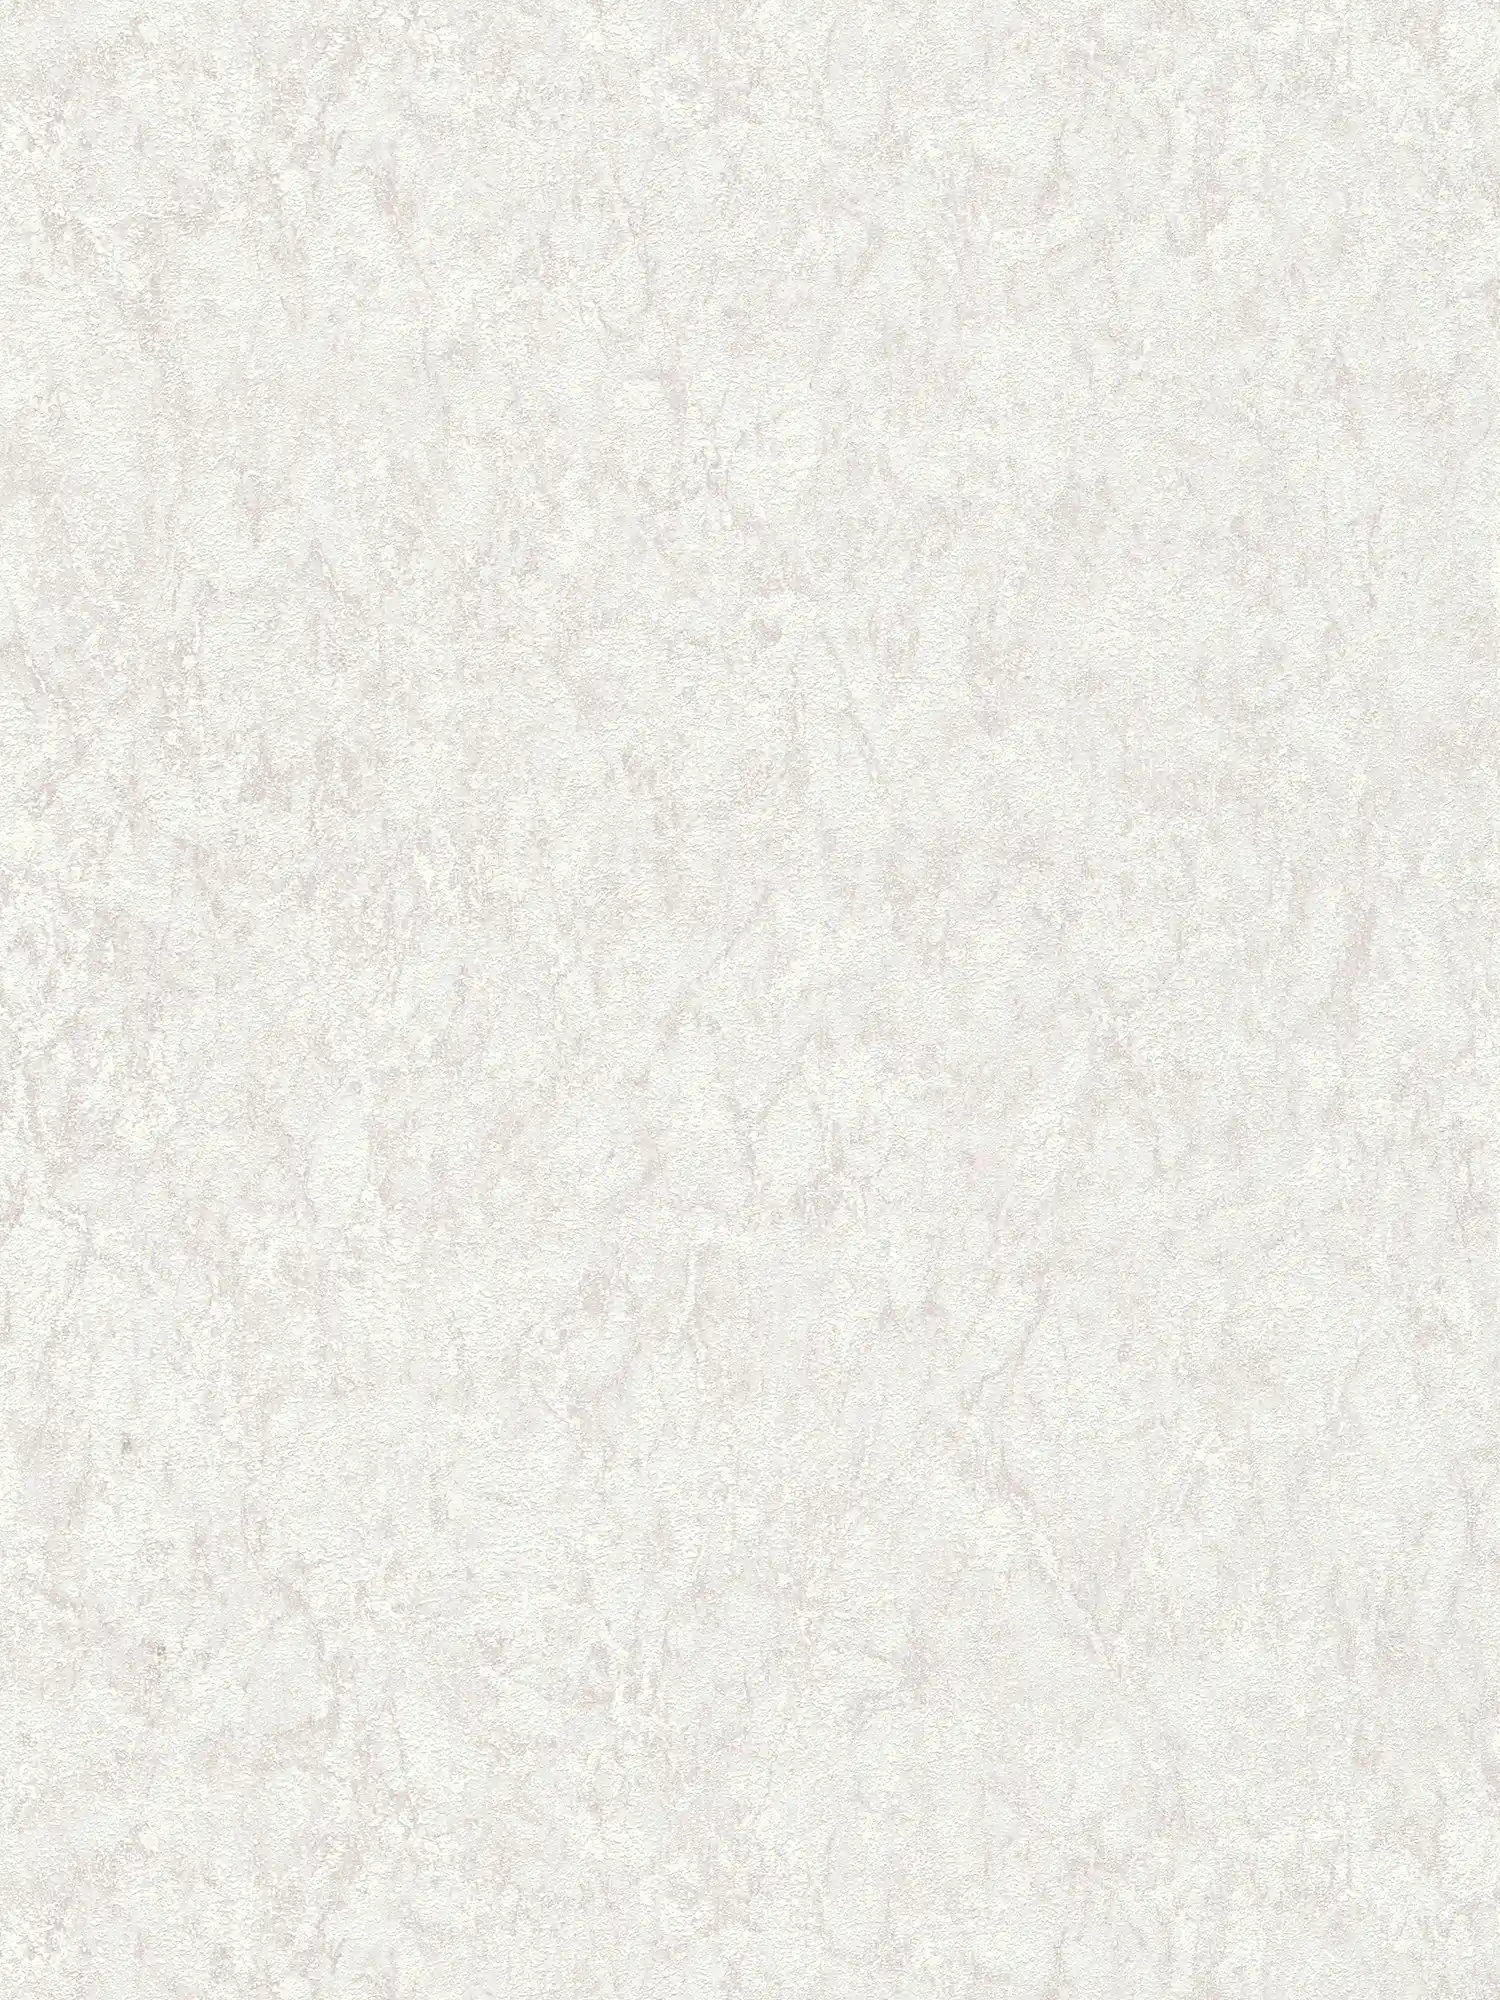 Eenheidsbehang met structuureffect & gevlekt design - grijs, beige, crème
